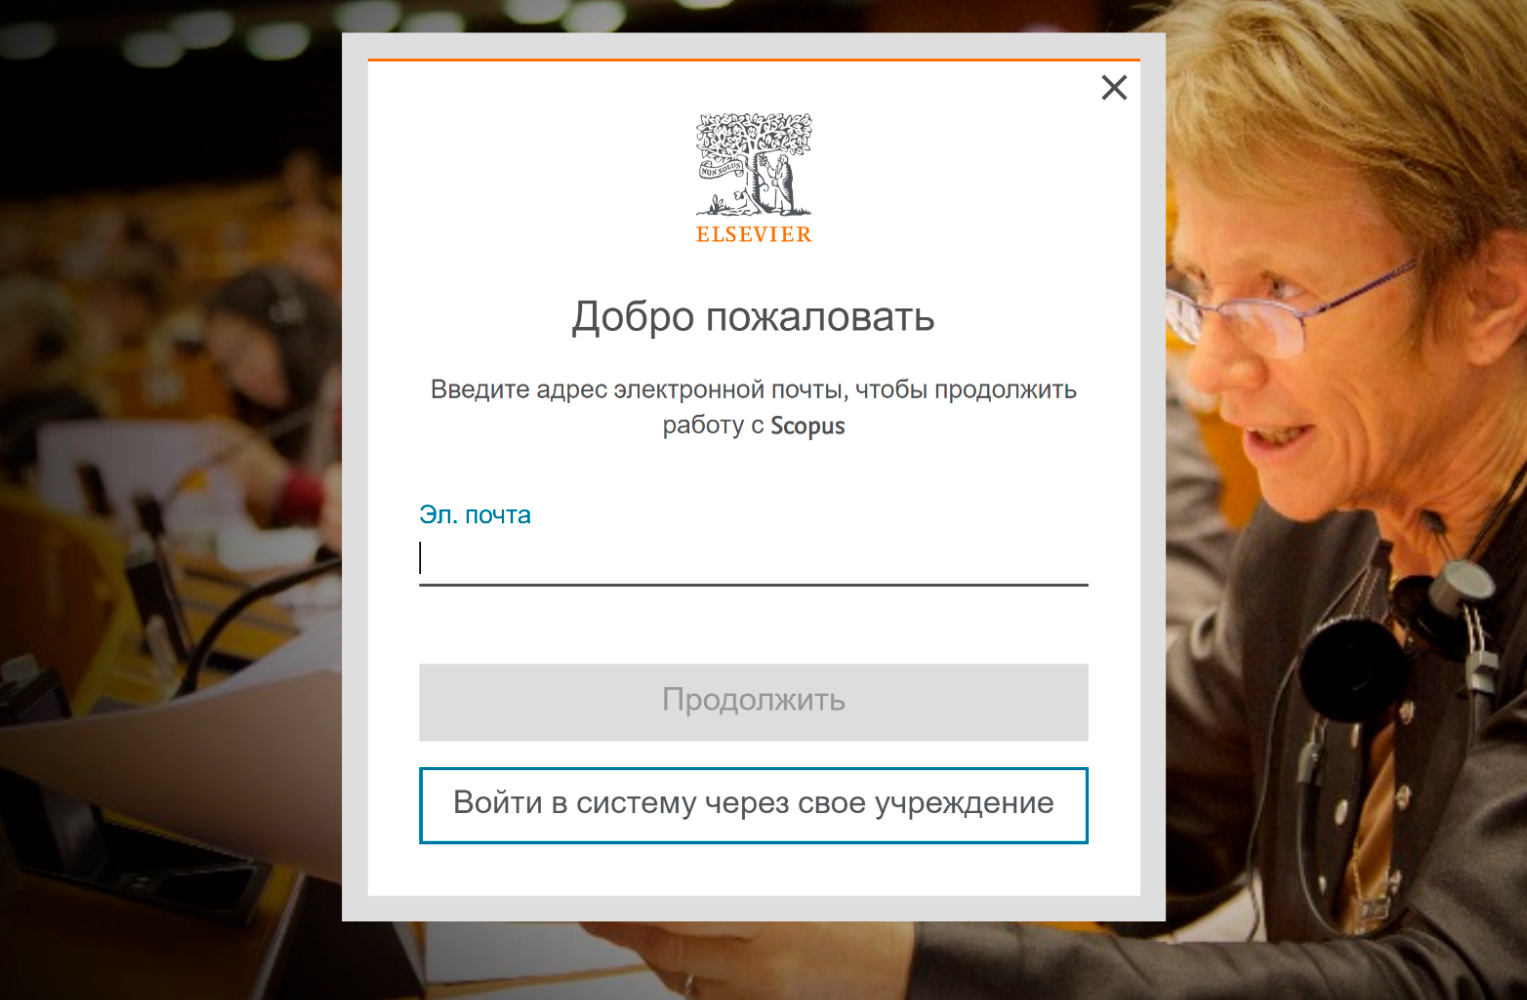 Локализация на русский язык выглядит коряво. Для просмотра в режиме Scopus Preview можно воспользоваться личной почтой